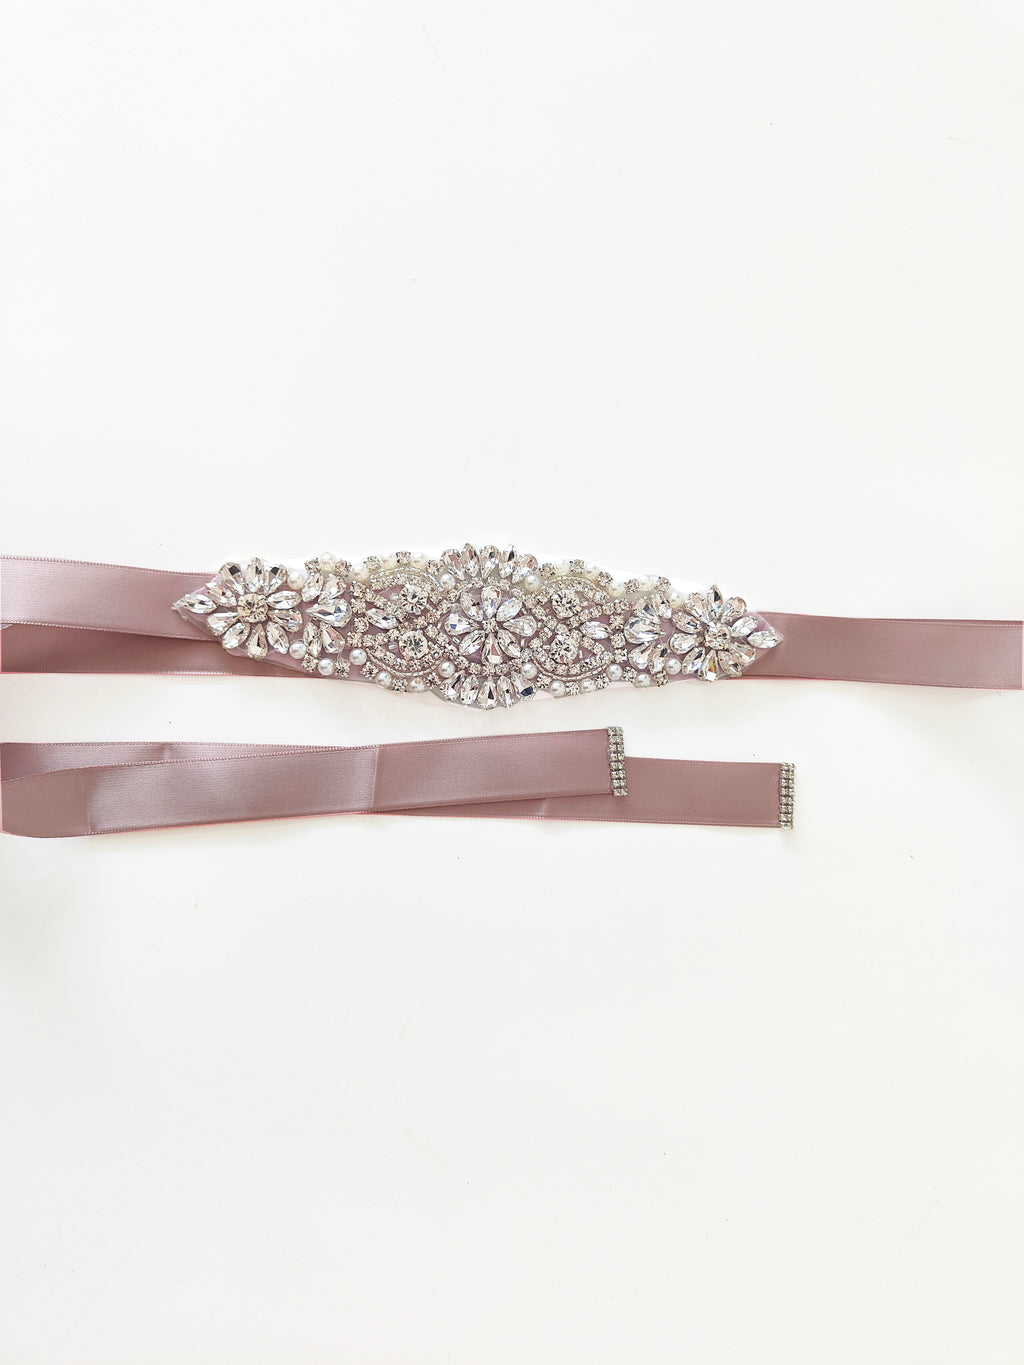 Girls Diamante Sash Belt - Blush - All Accessories